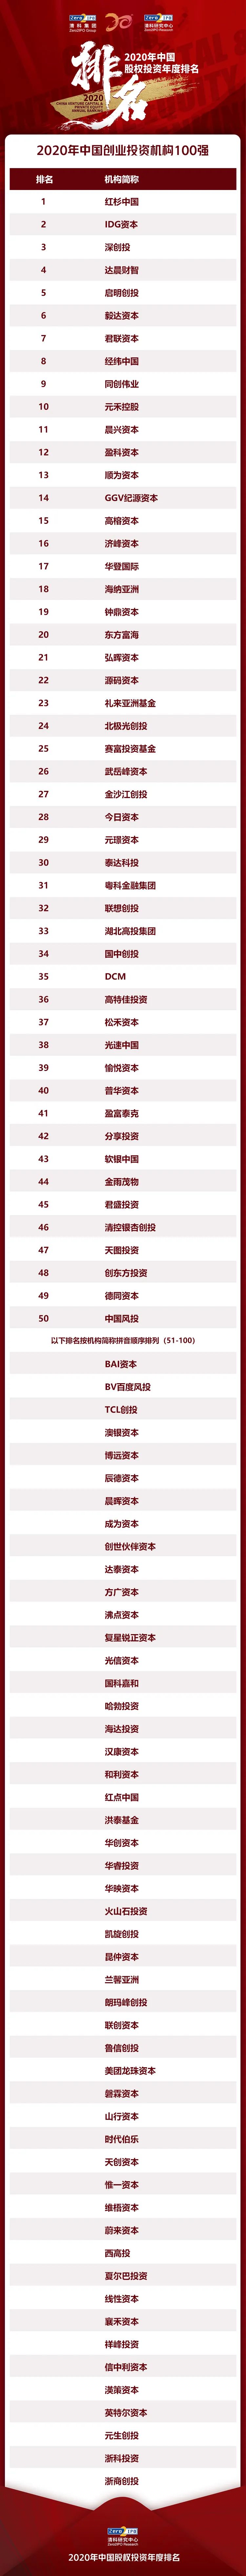 清科集团2020中国股权投资年度排名榜单——创业投资篇插图1